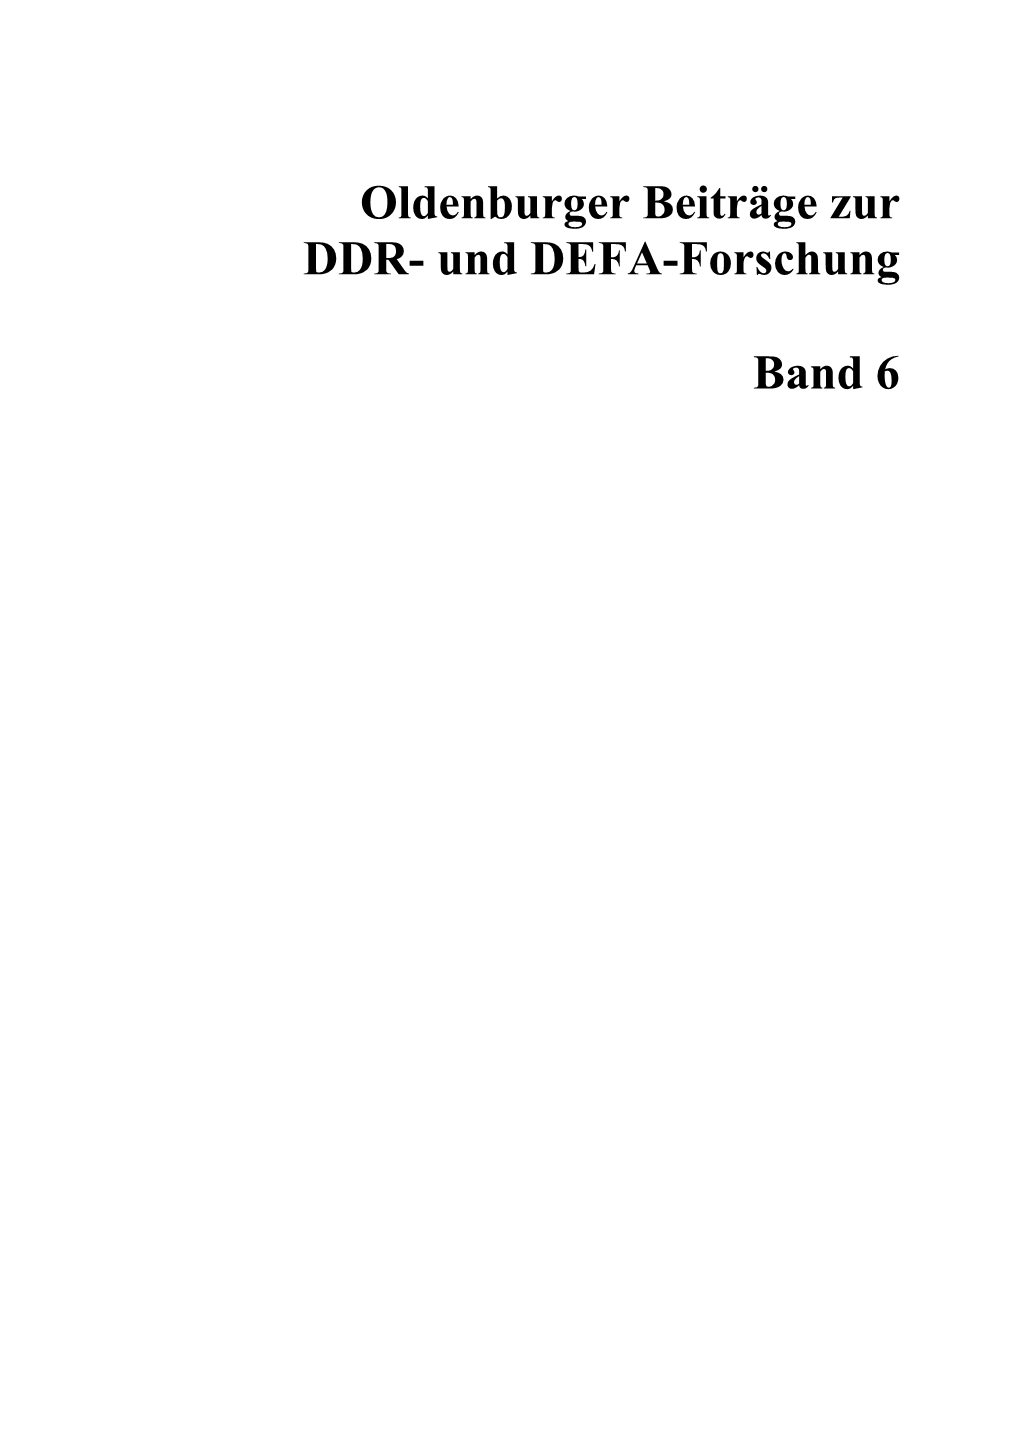 Oldenburger Beiträge Zur DDR- Und DEFA-Forschung